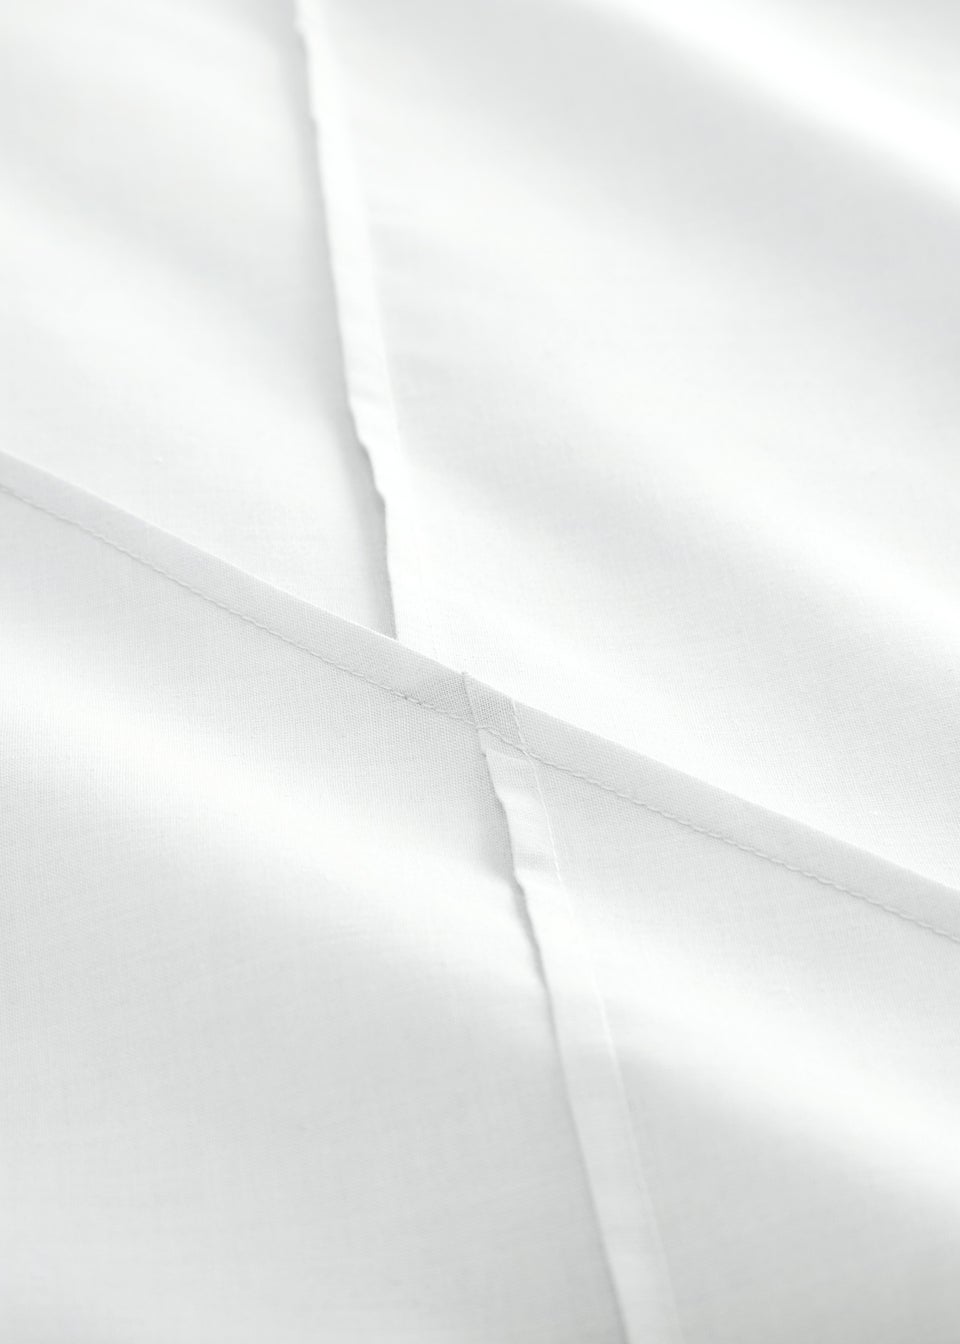 Serene Dart White Duvet Cover Set